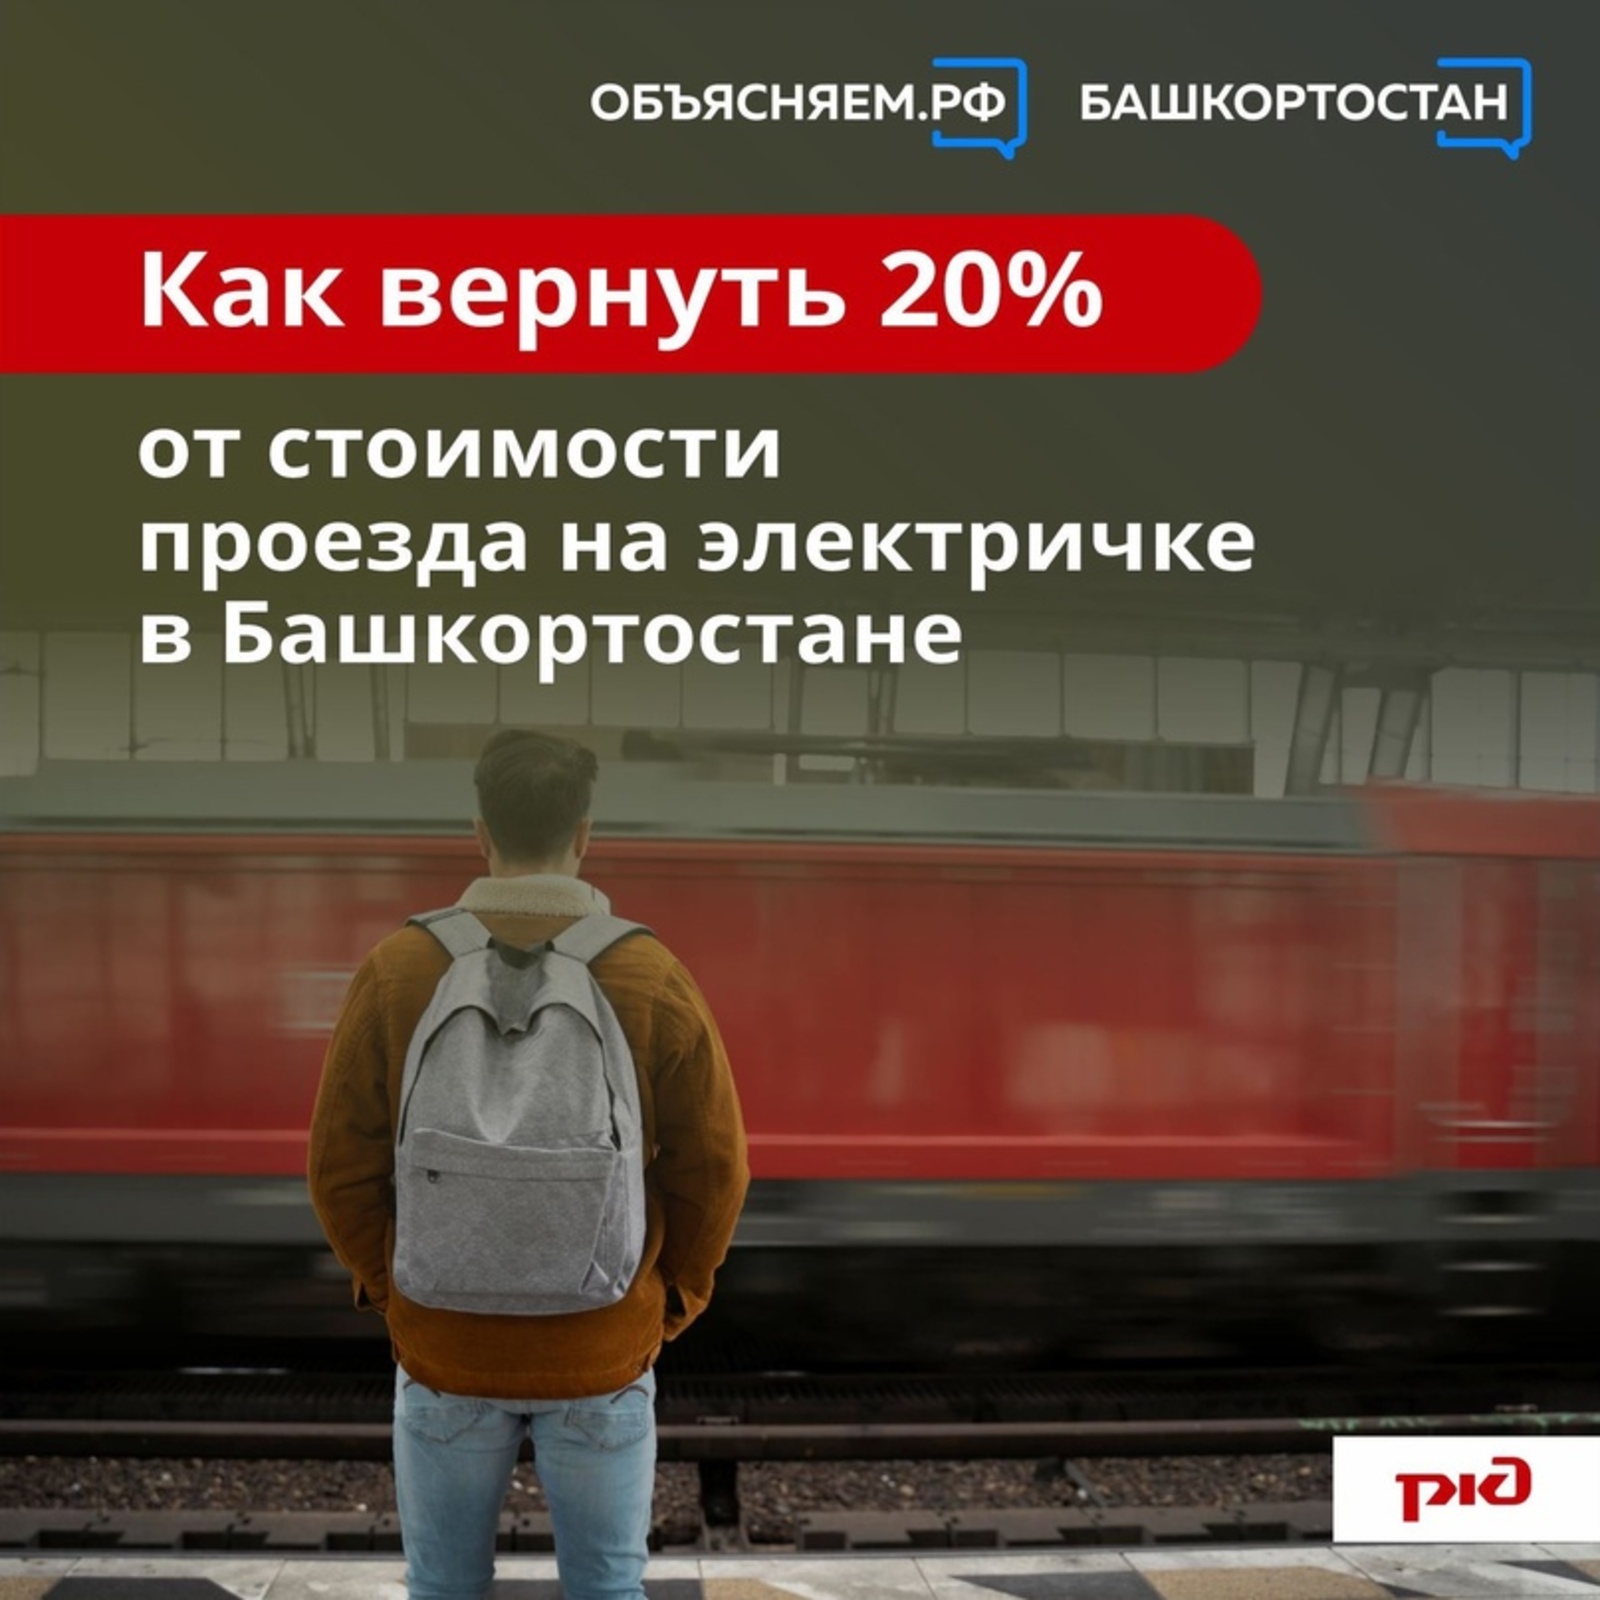 Как вернуть 20% от стоимости проезда на электричке в Башкортостане